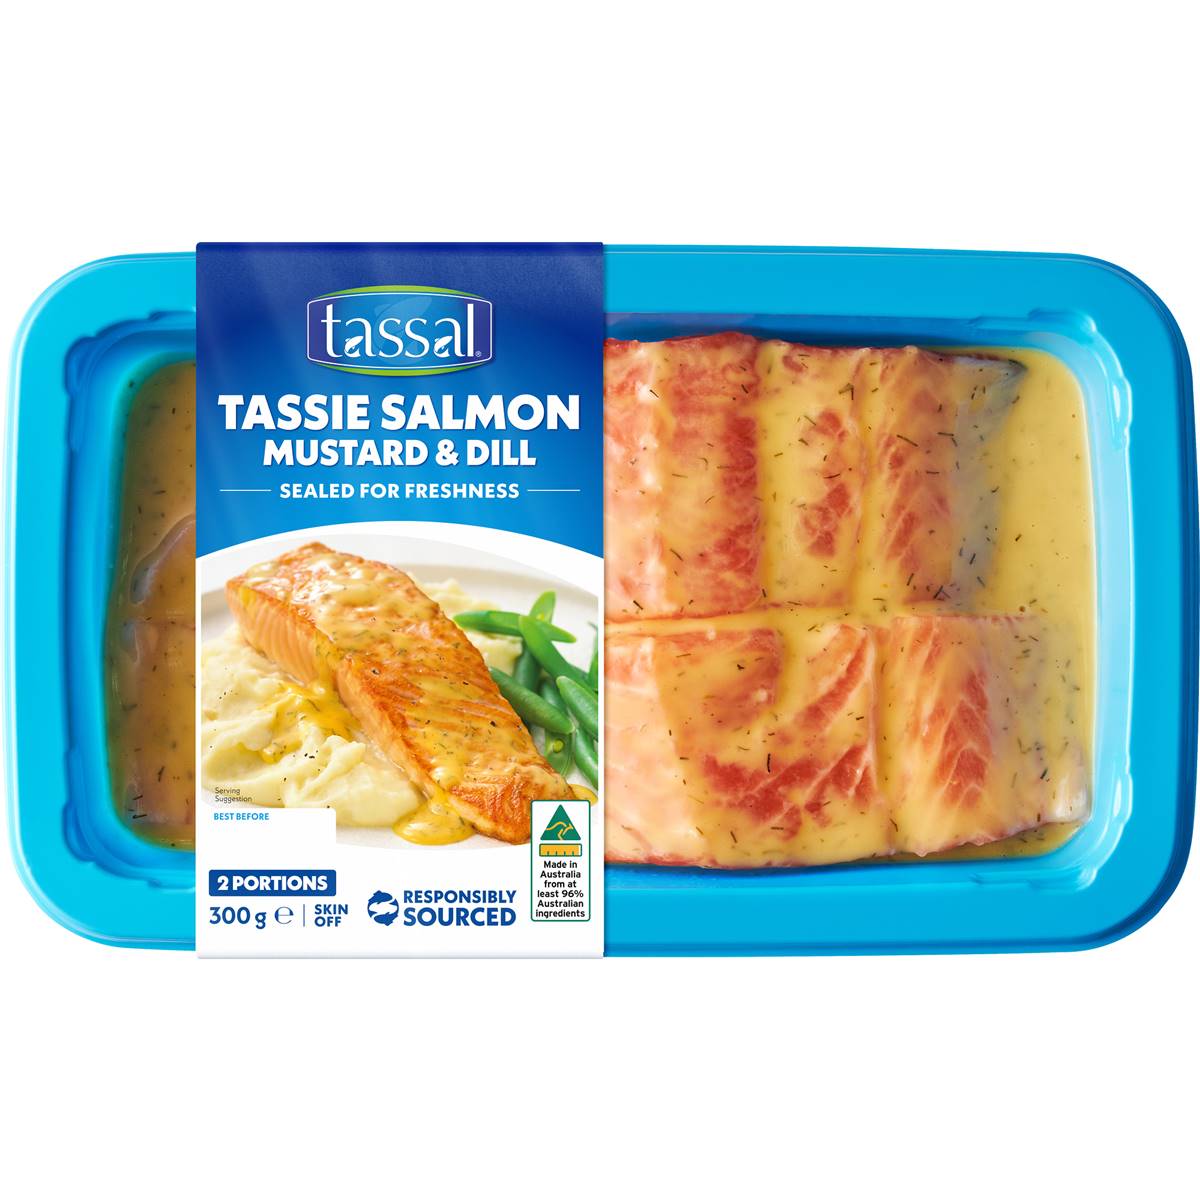 Calories in Tassal Salmon Mustard & Dill